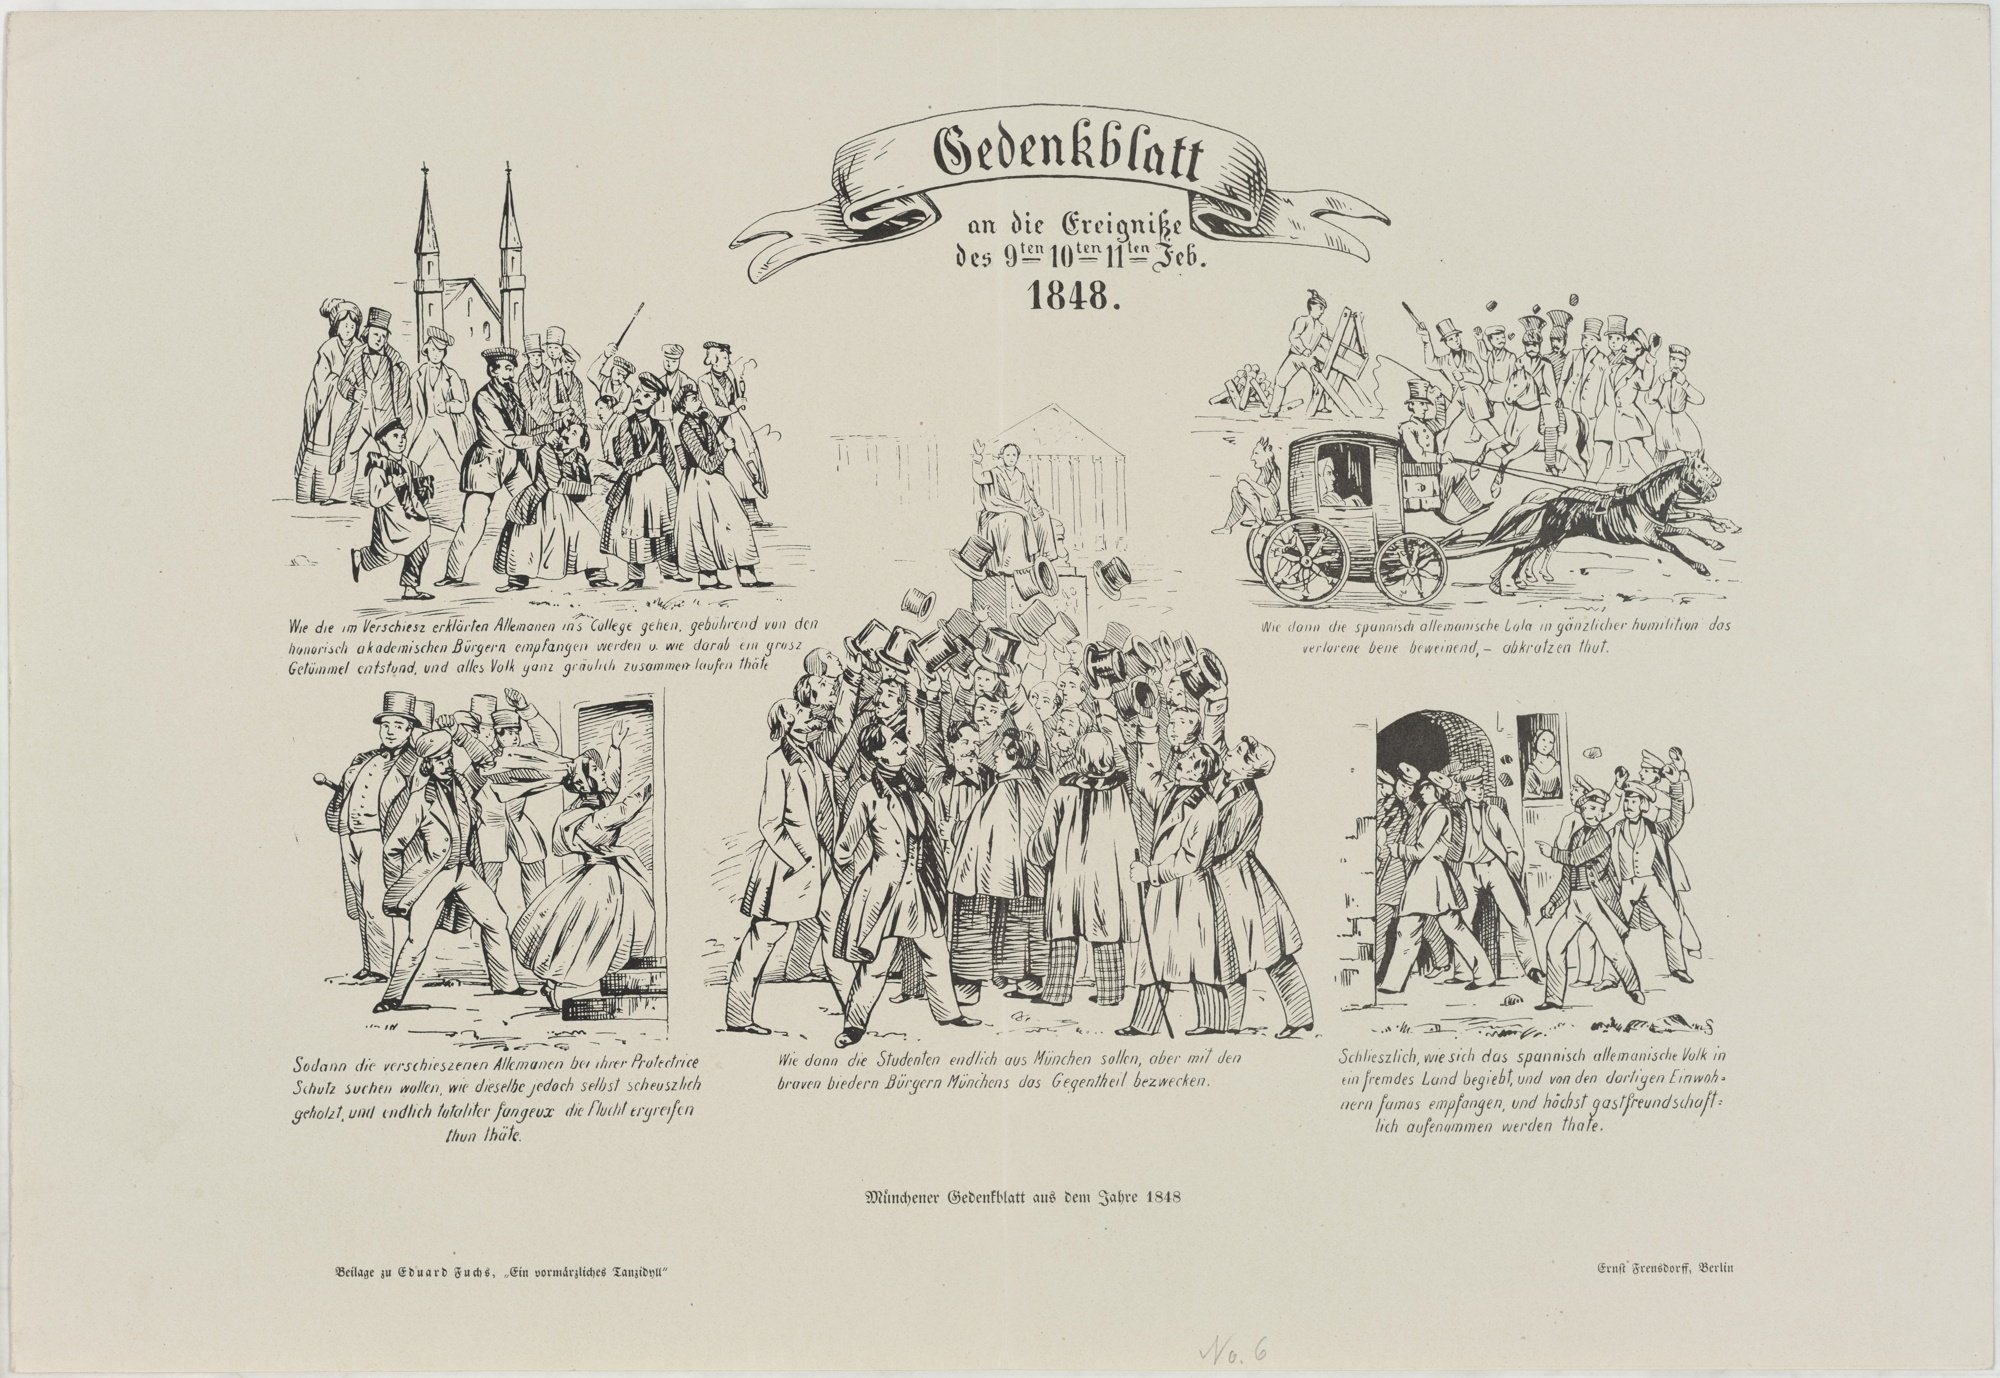 Gedenkblatt/ an die Ereigniße/ des 9ten 10ten 11ten Feb./ 1848. (Kulturstiftung Sachsen-Anhalt Public Domain Mark)